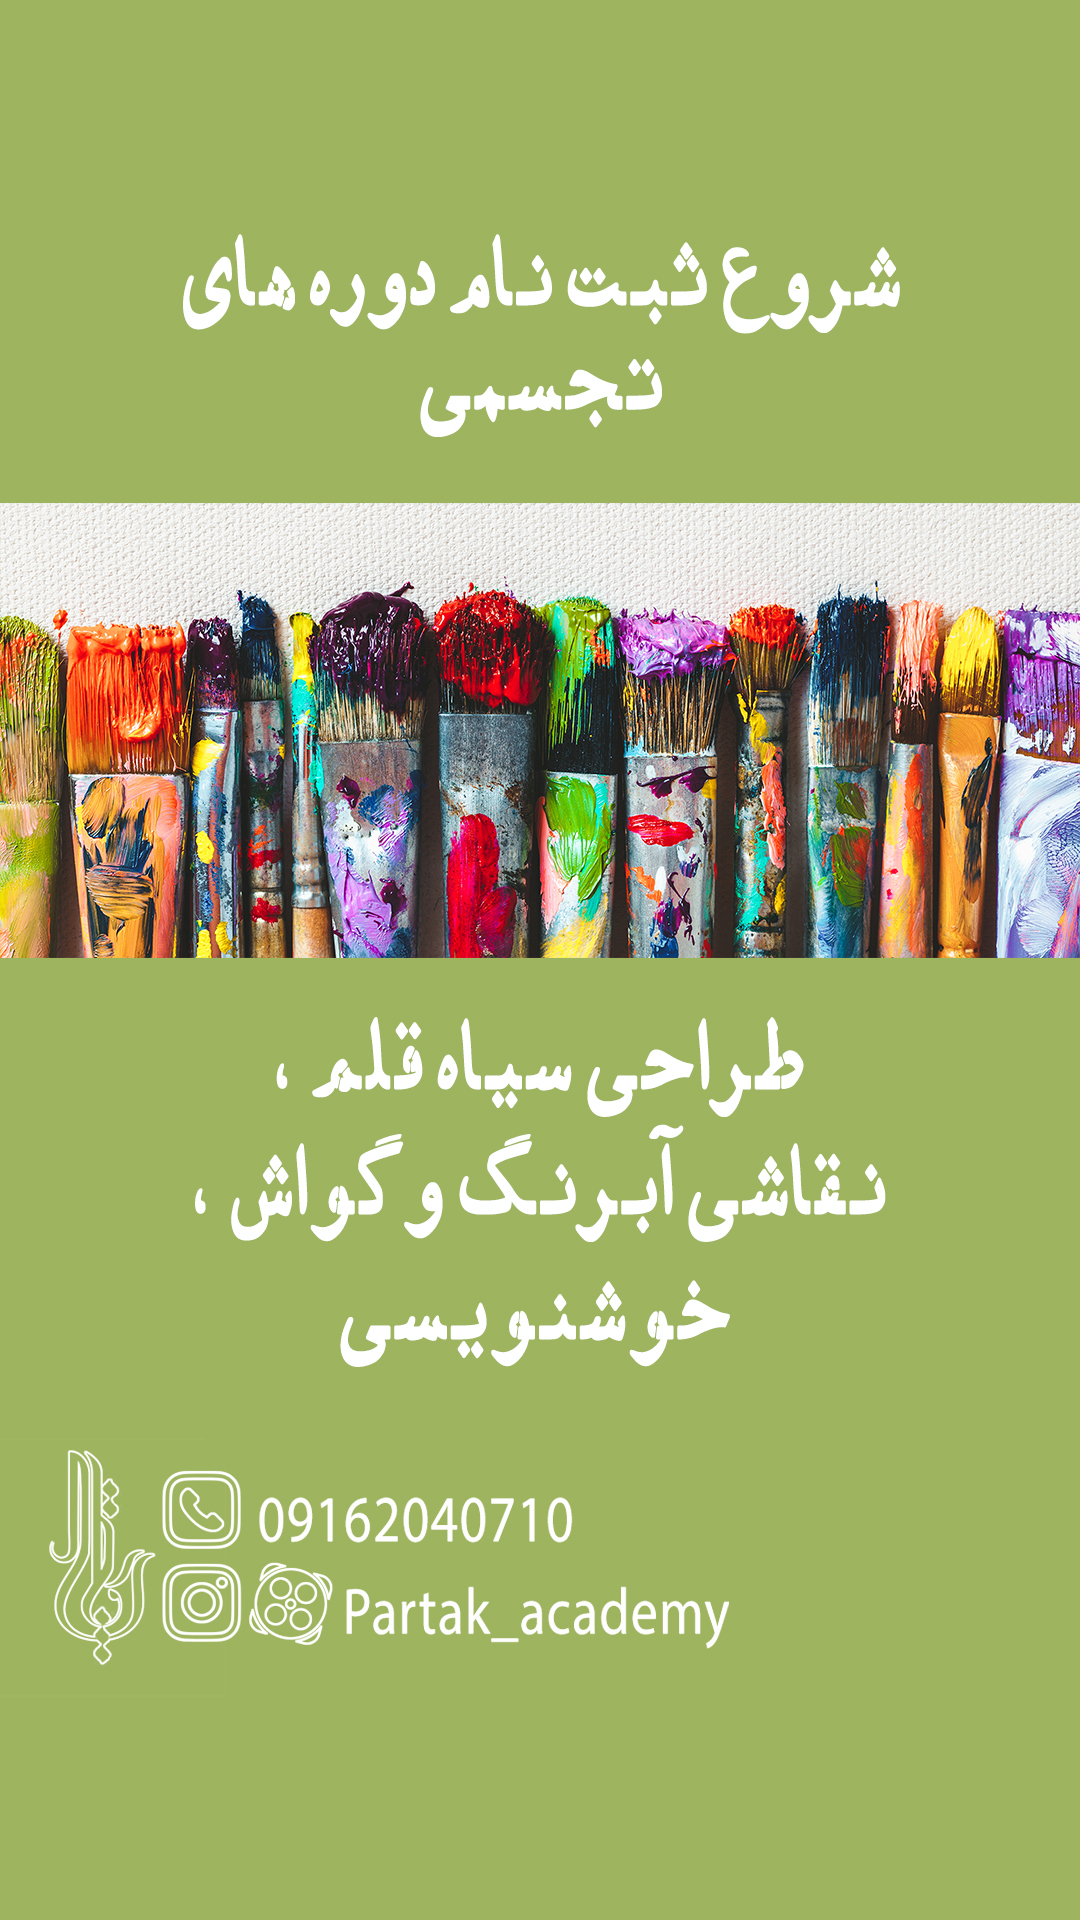 آموزشگاه نقاشی اصفهان